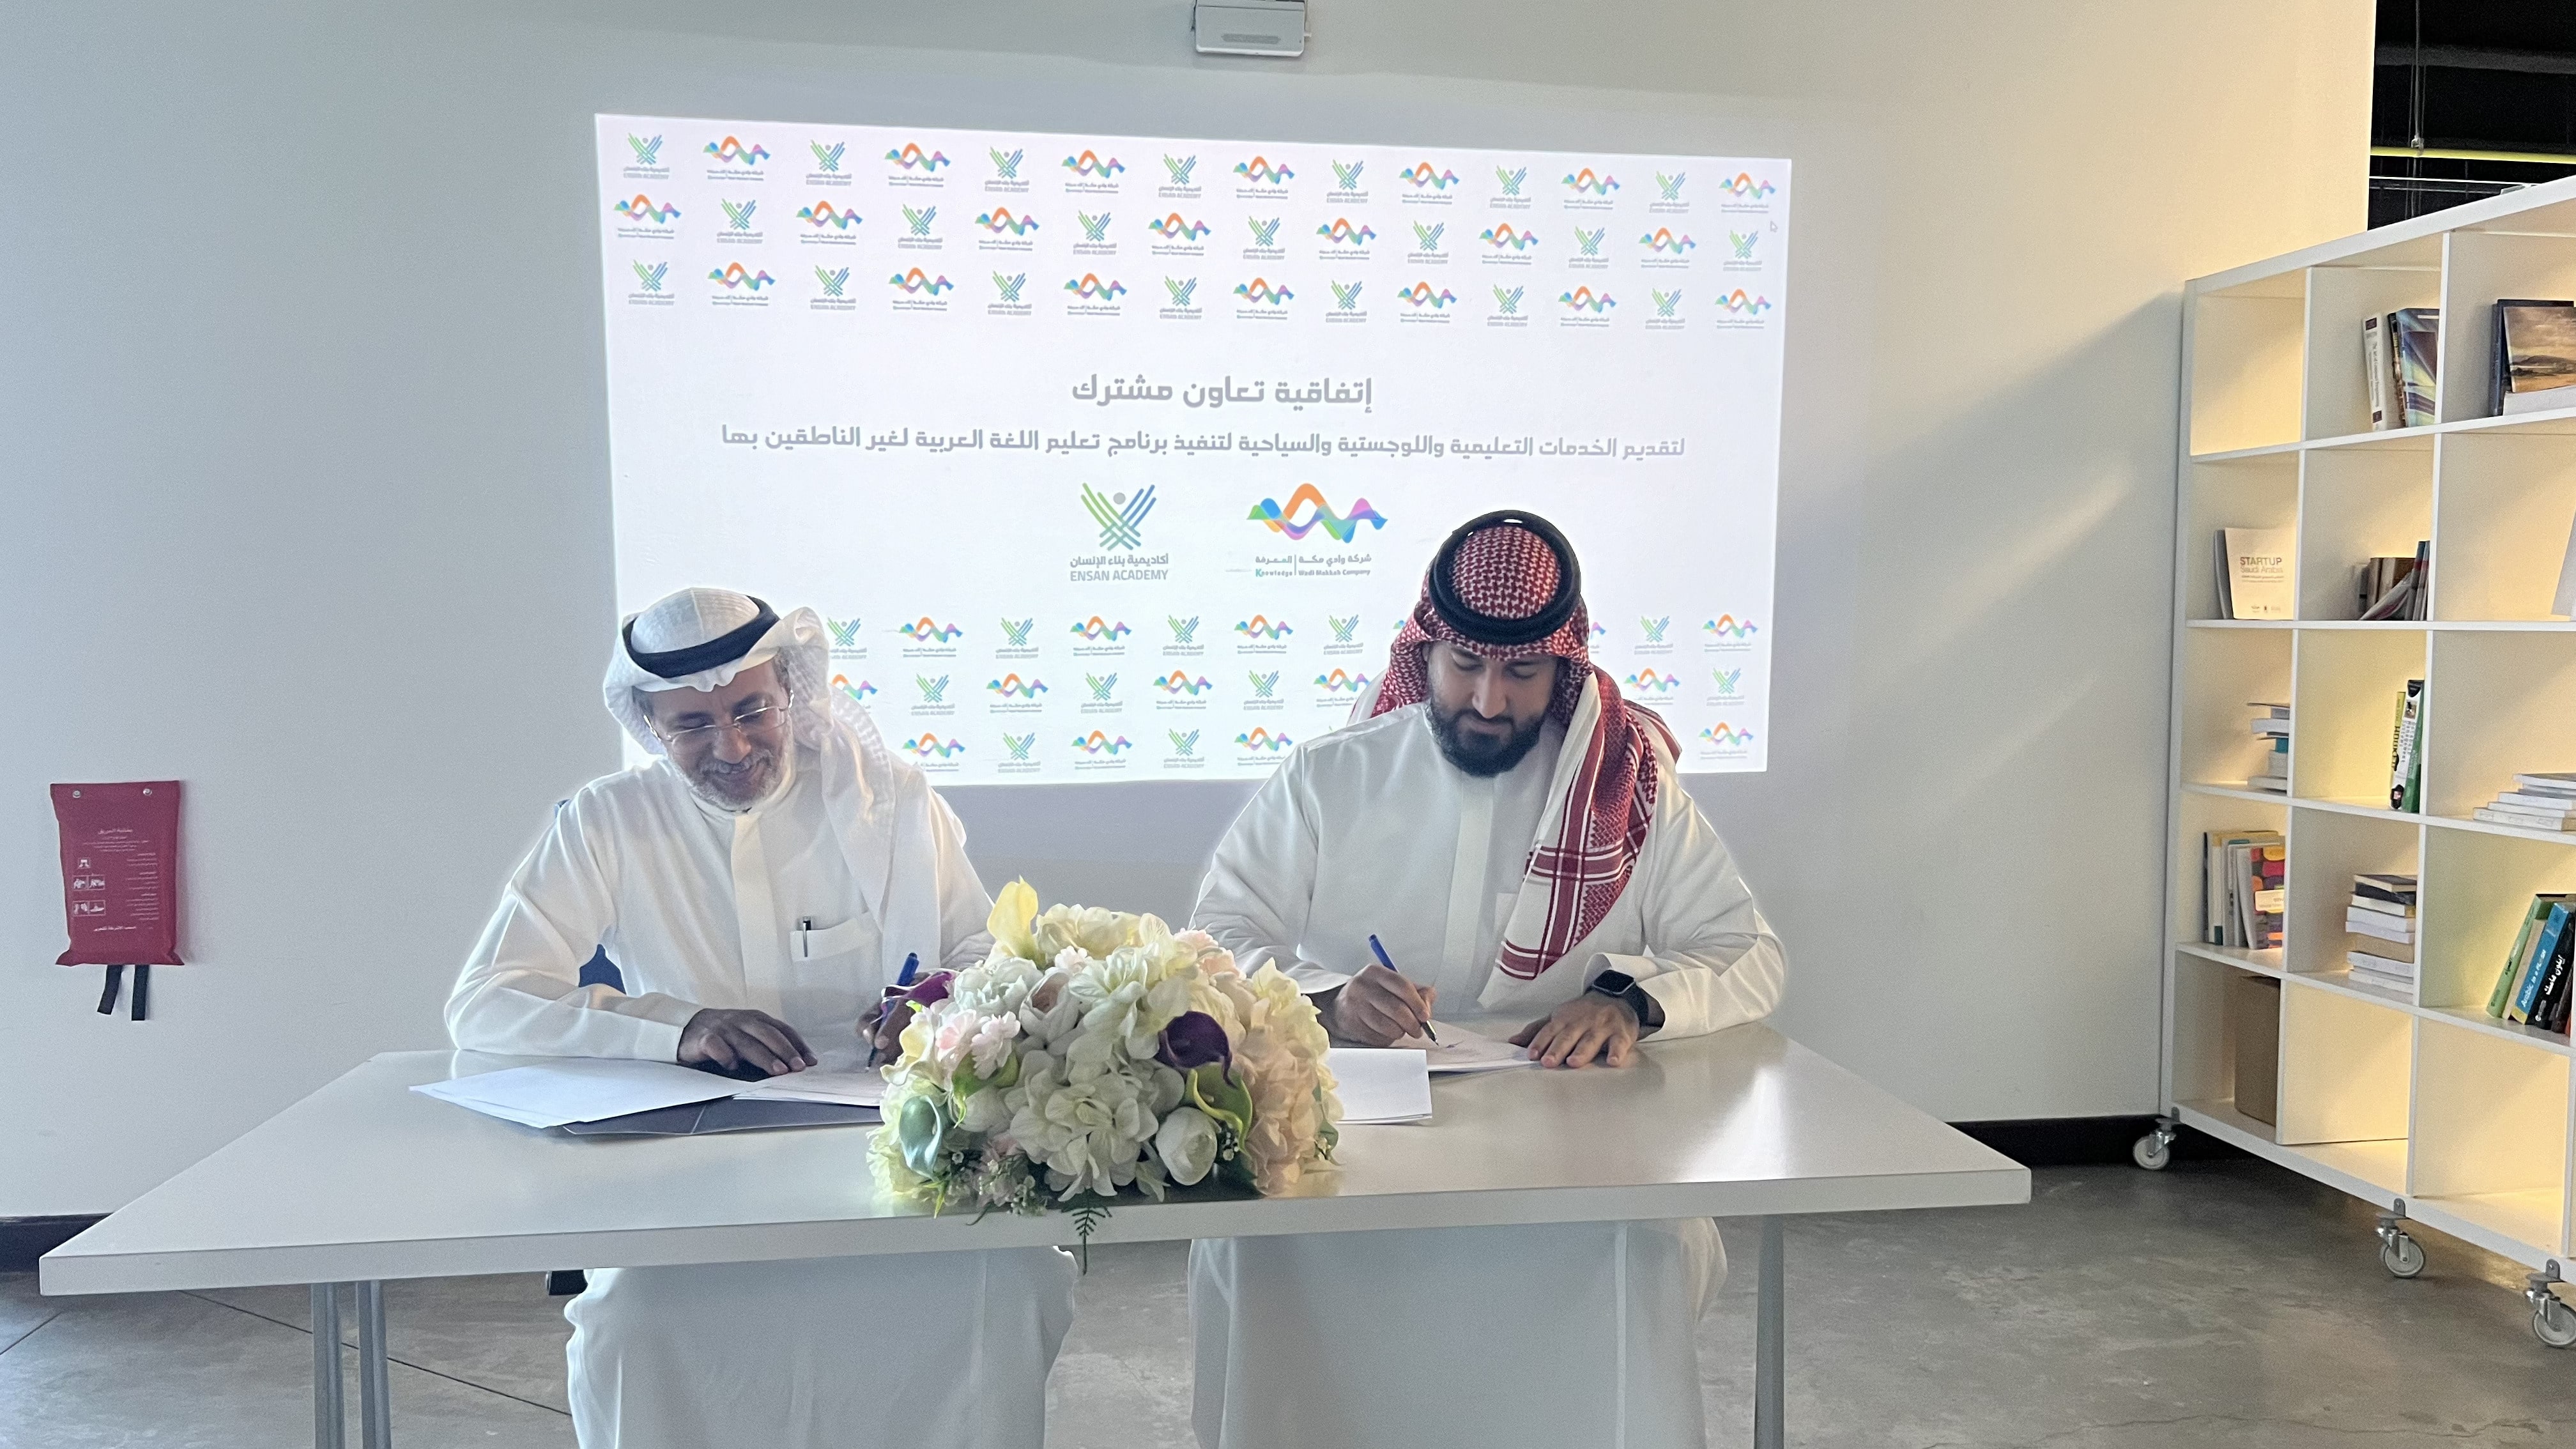 شراكة استراتيجية لتقديم الخدمات اللوجستية والسياحية بين شركة وادي مكة المعرفة وأكاديمية بناء الإنسان